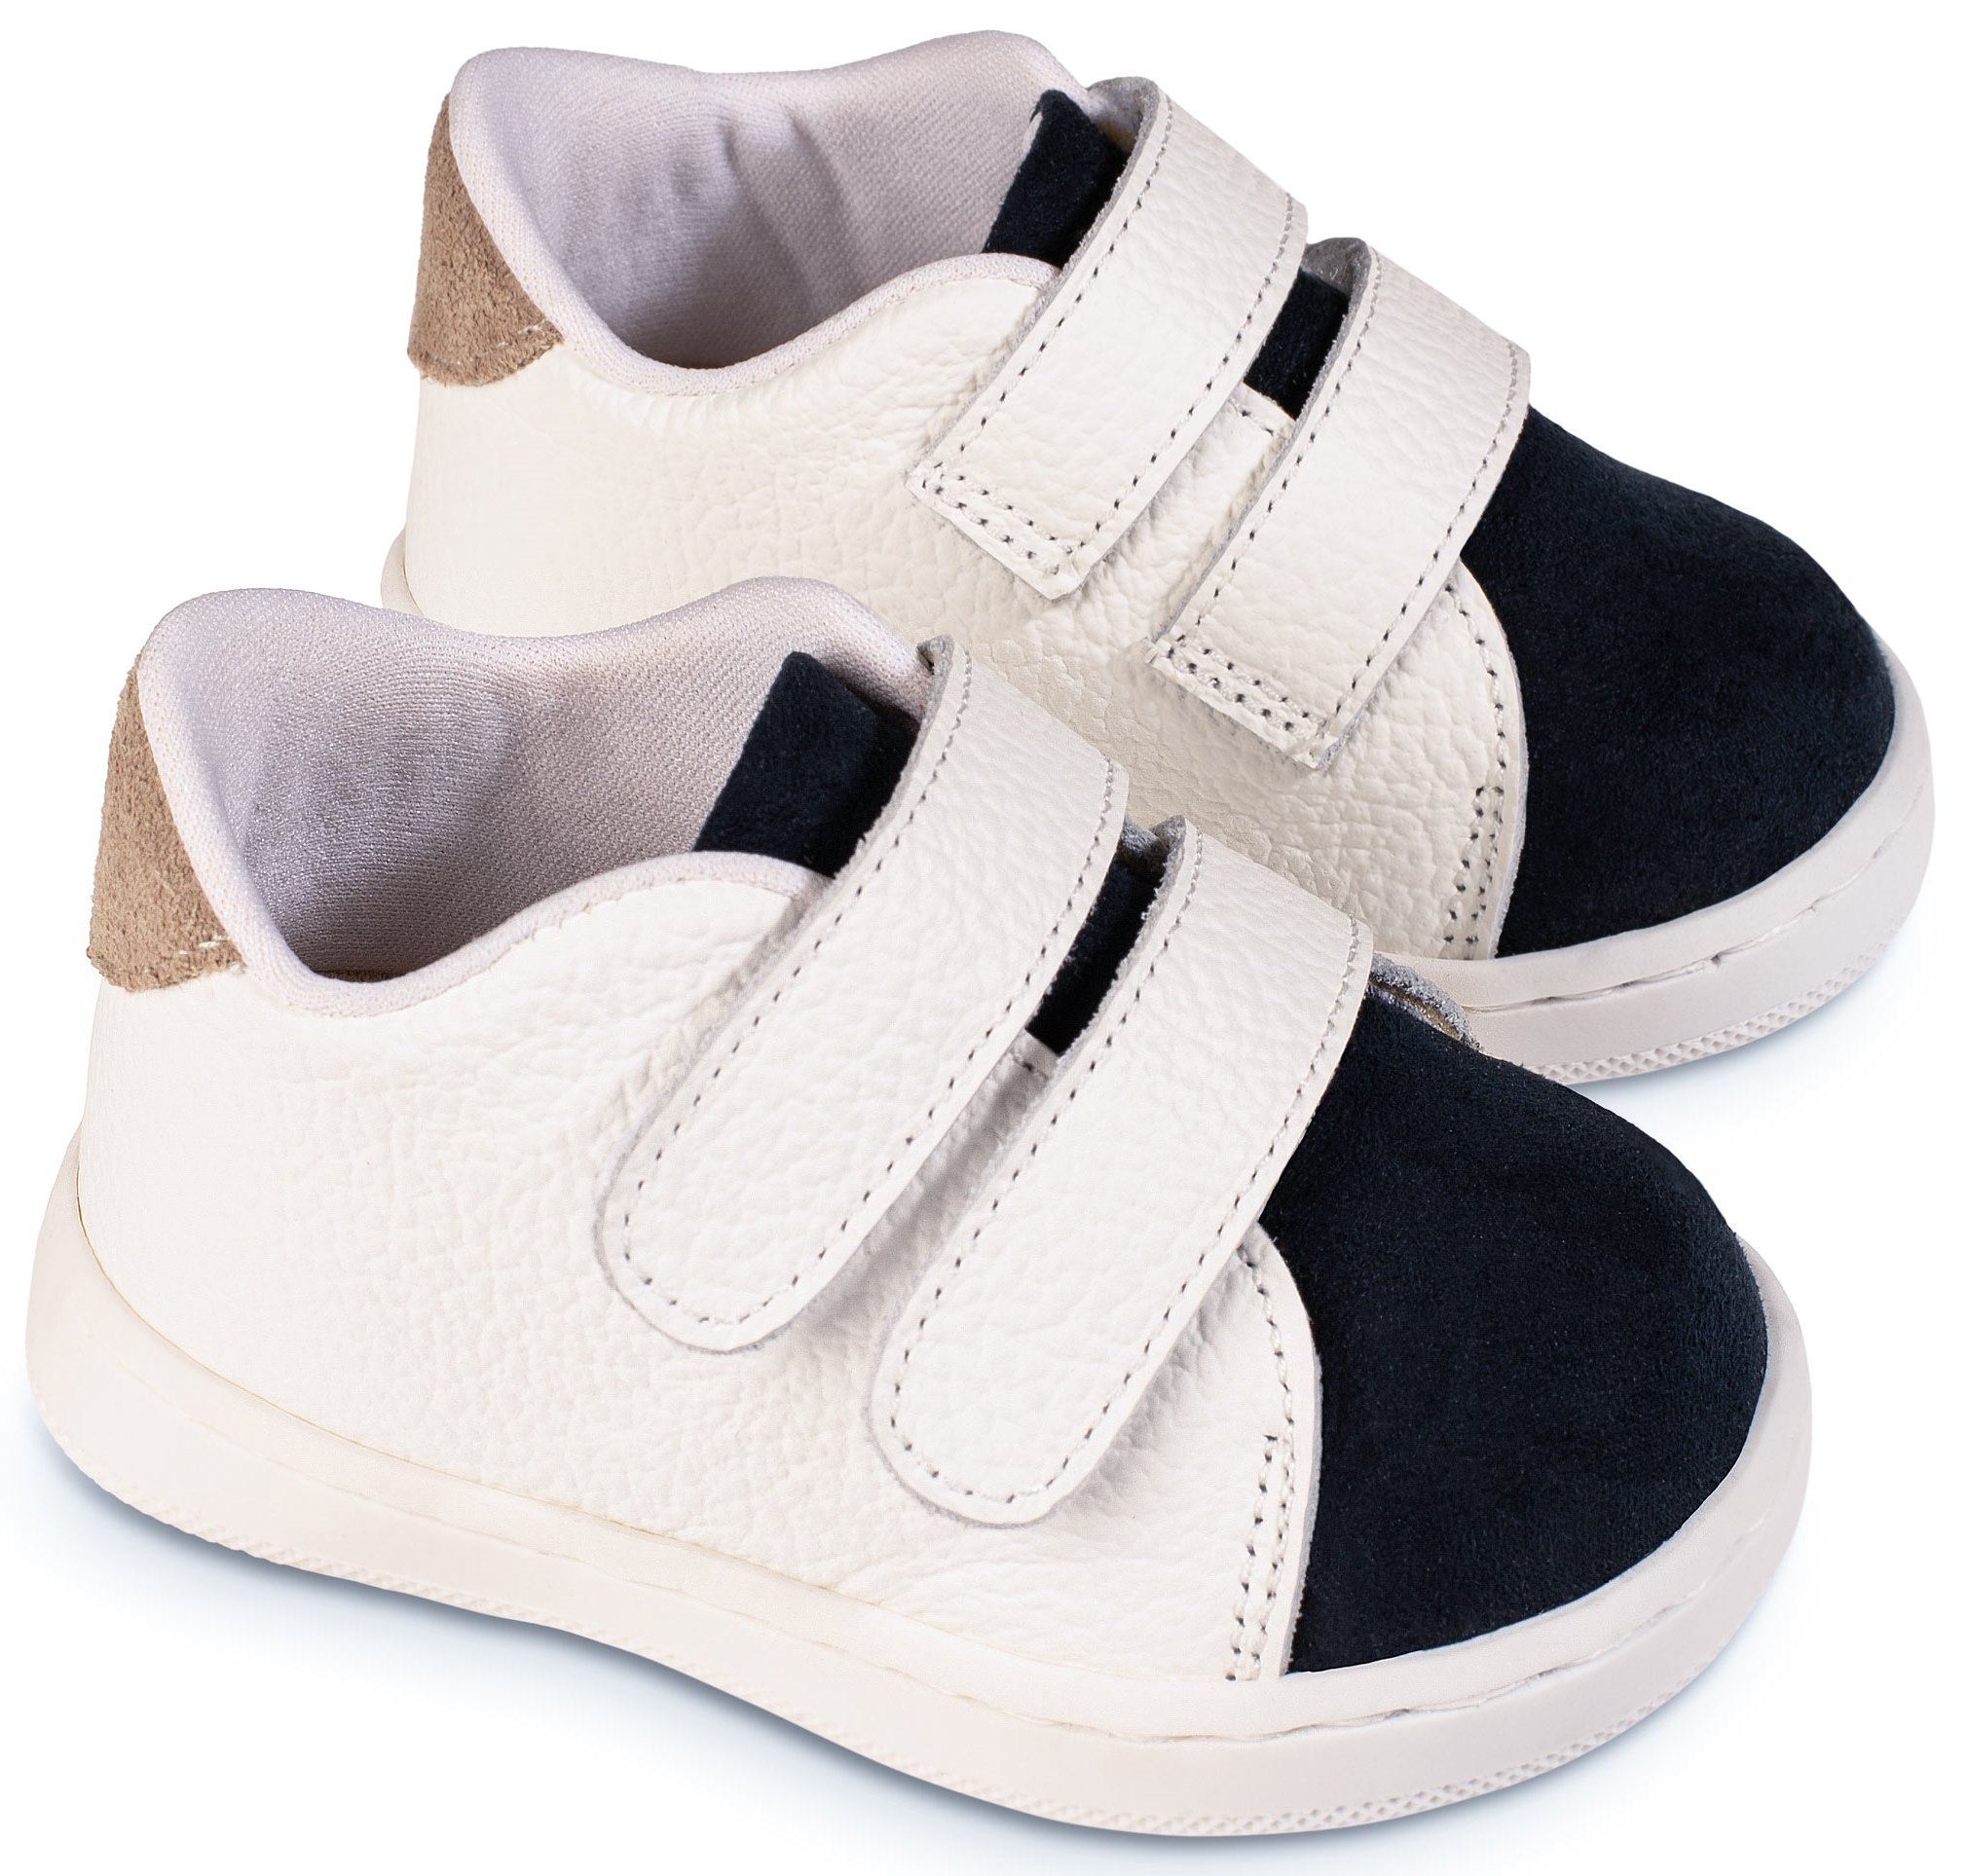 Babywalker Μπλε-Λευκό Σκρατς - Βαπτιστικά παπούτσια για αγόρι